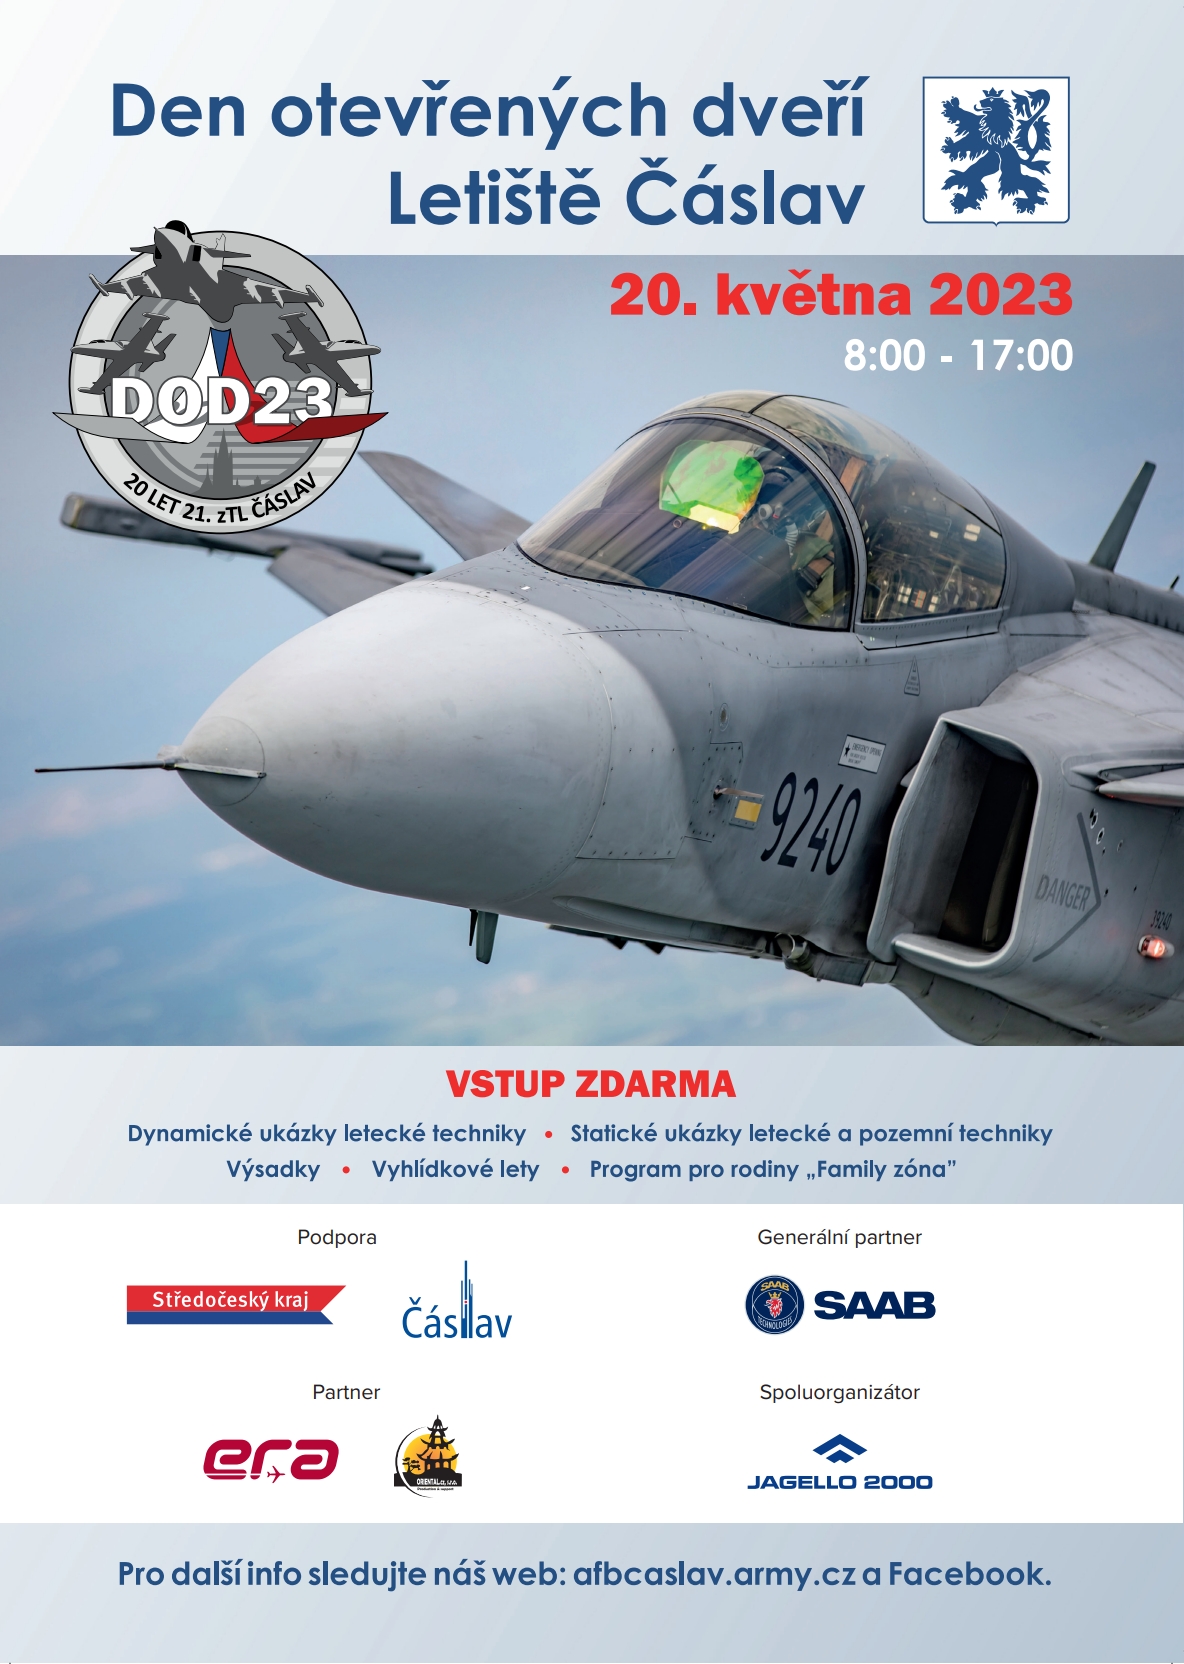 Plakát DOD 21. základny taktického letectva